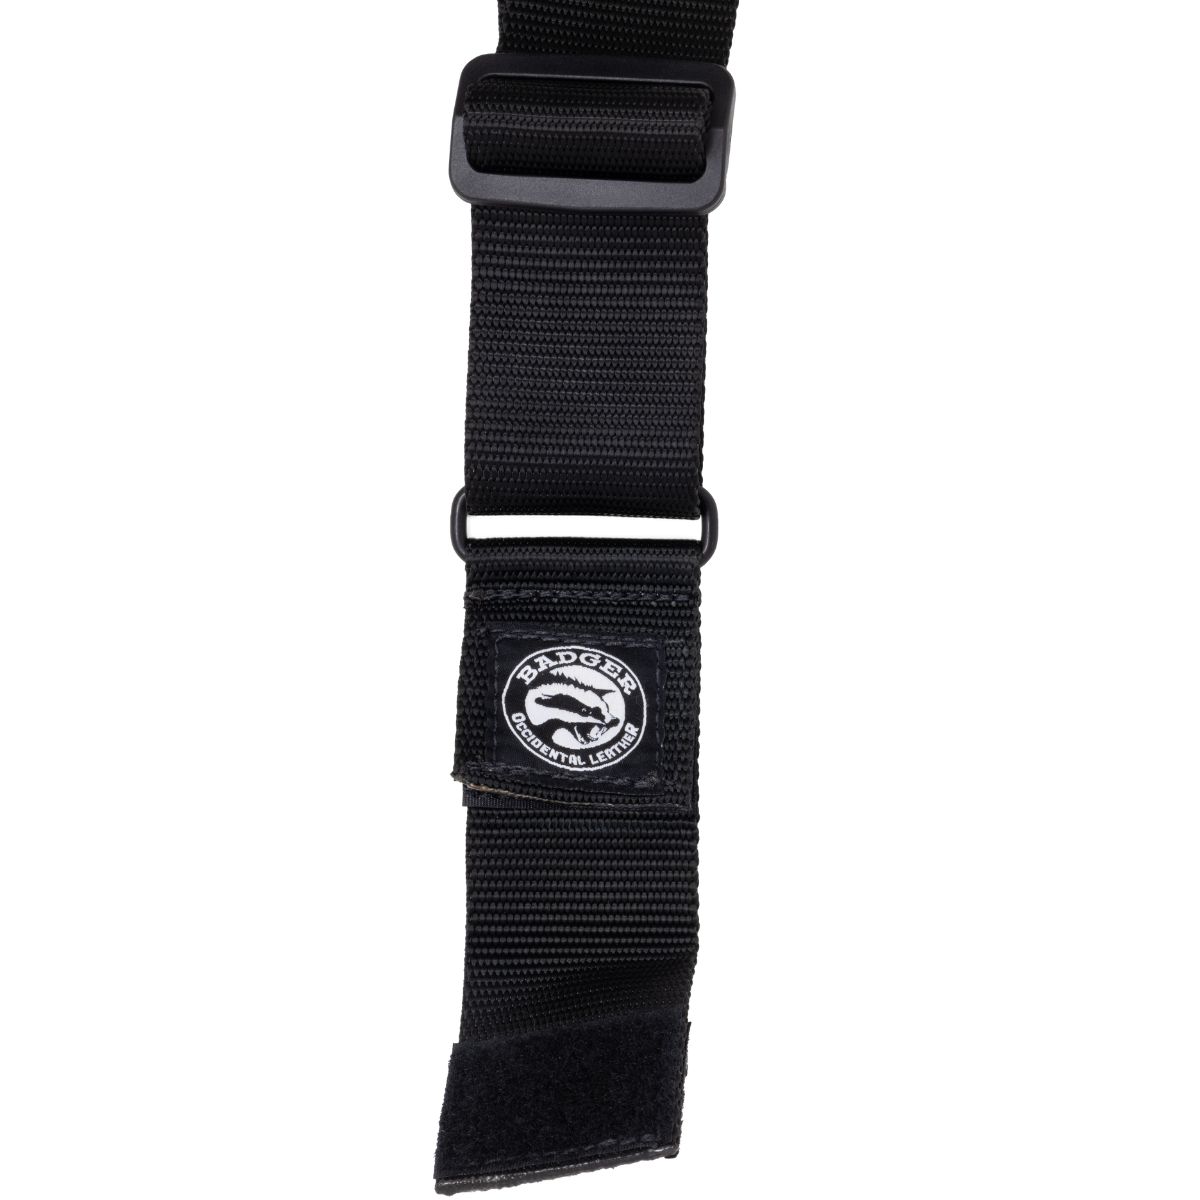 Badger Suspender Rapid Release System - Badger Tool Belts